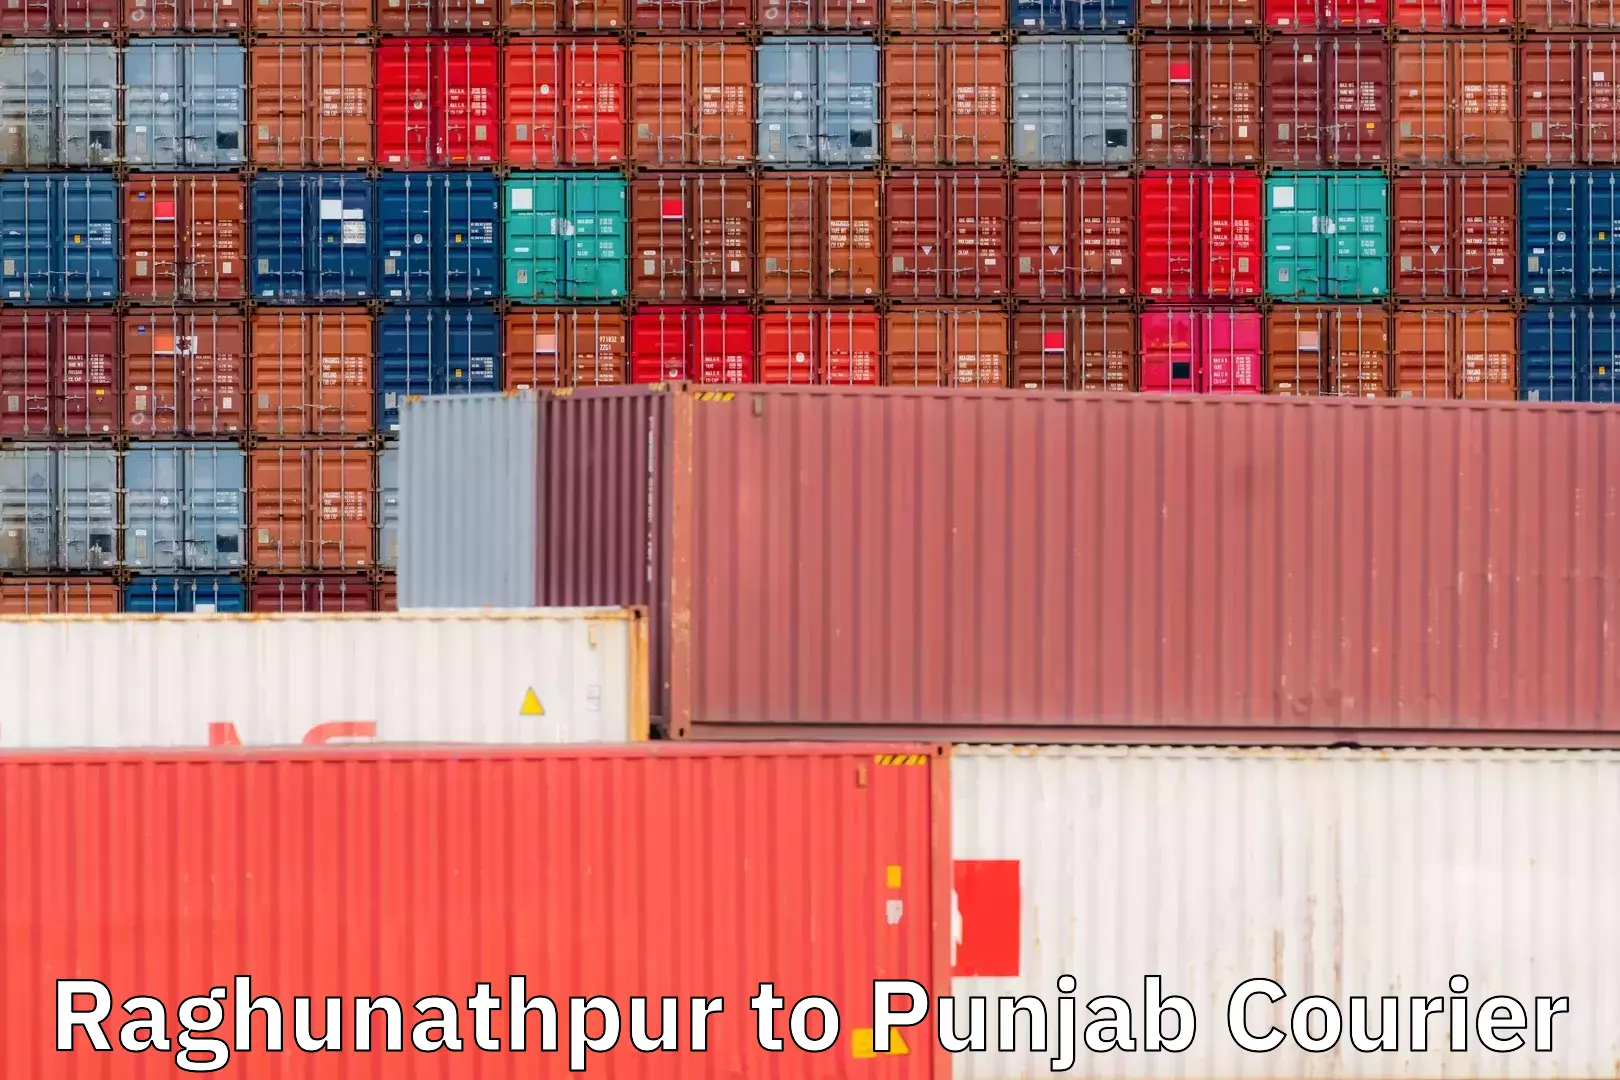 On-demand shipping options Raghunathpur to Punjab